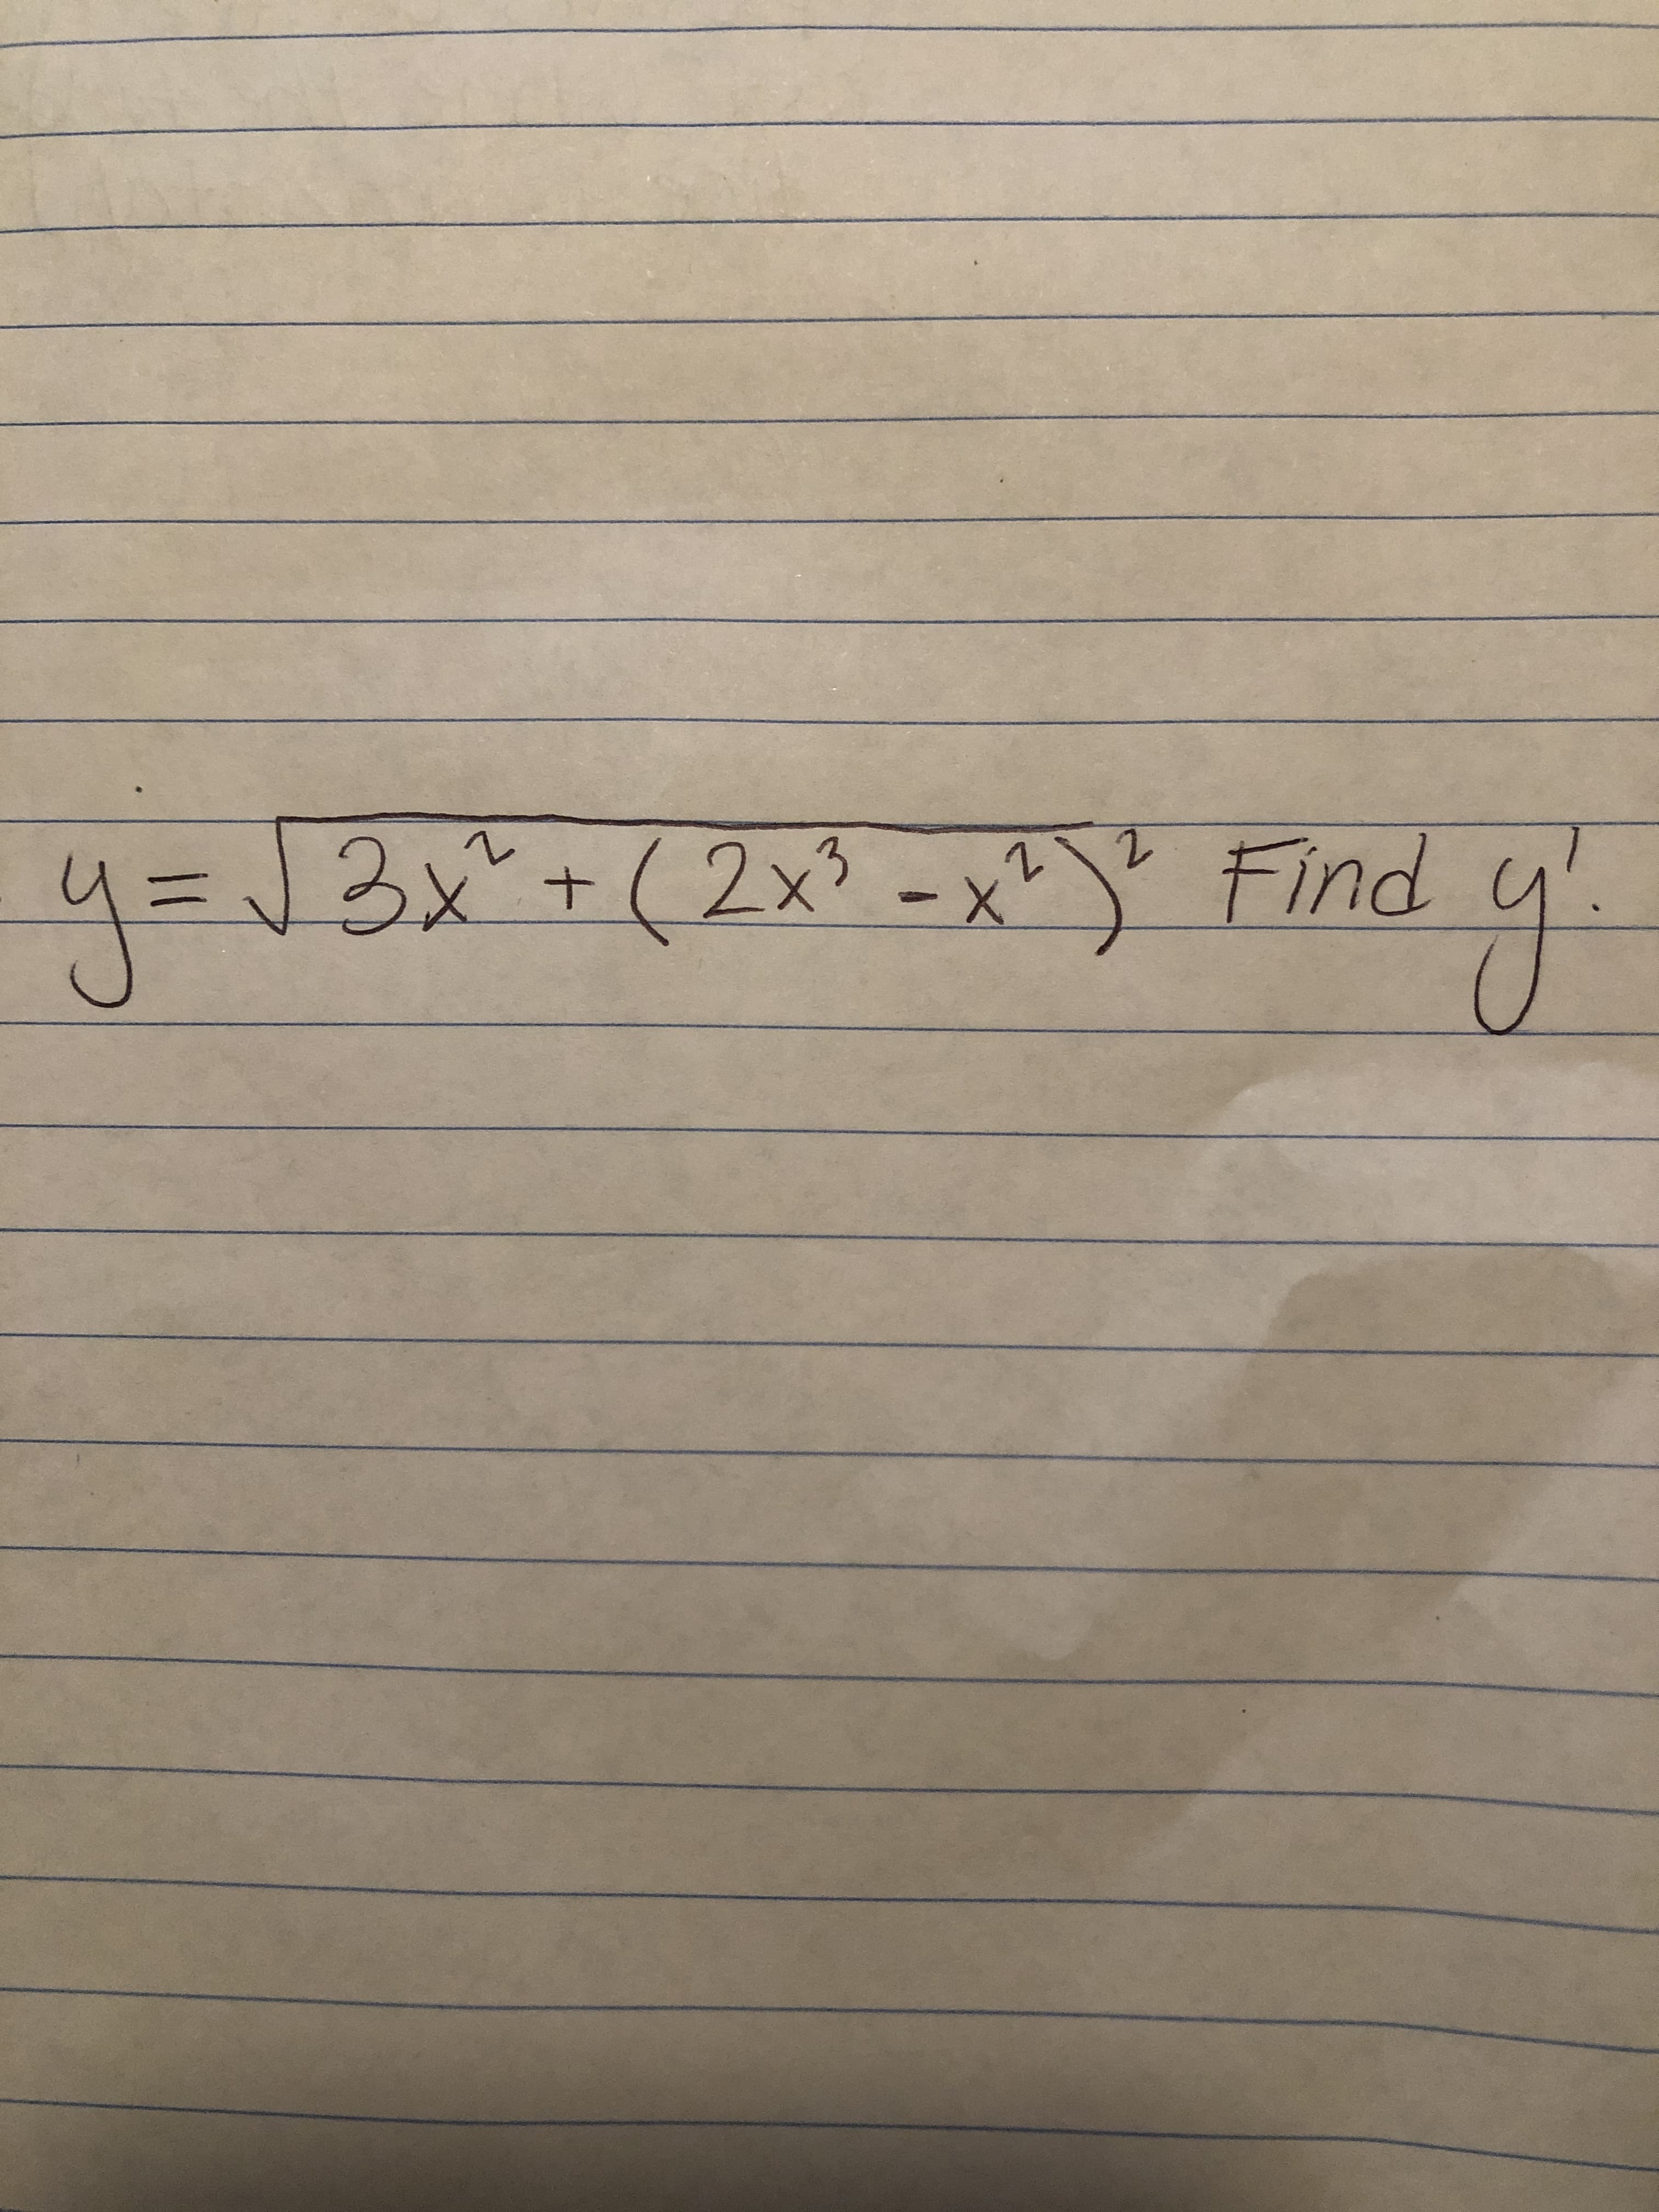 4= Find y
13x+(2x3-x'
